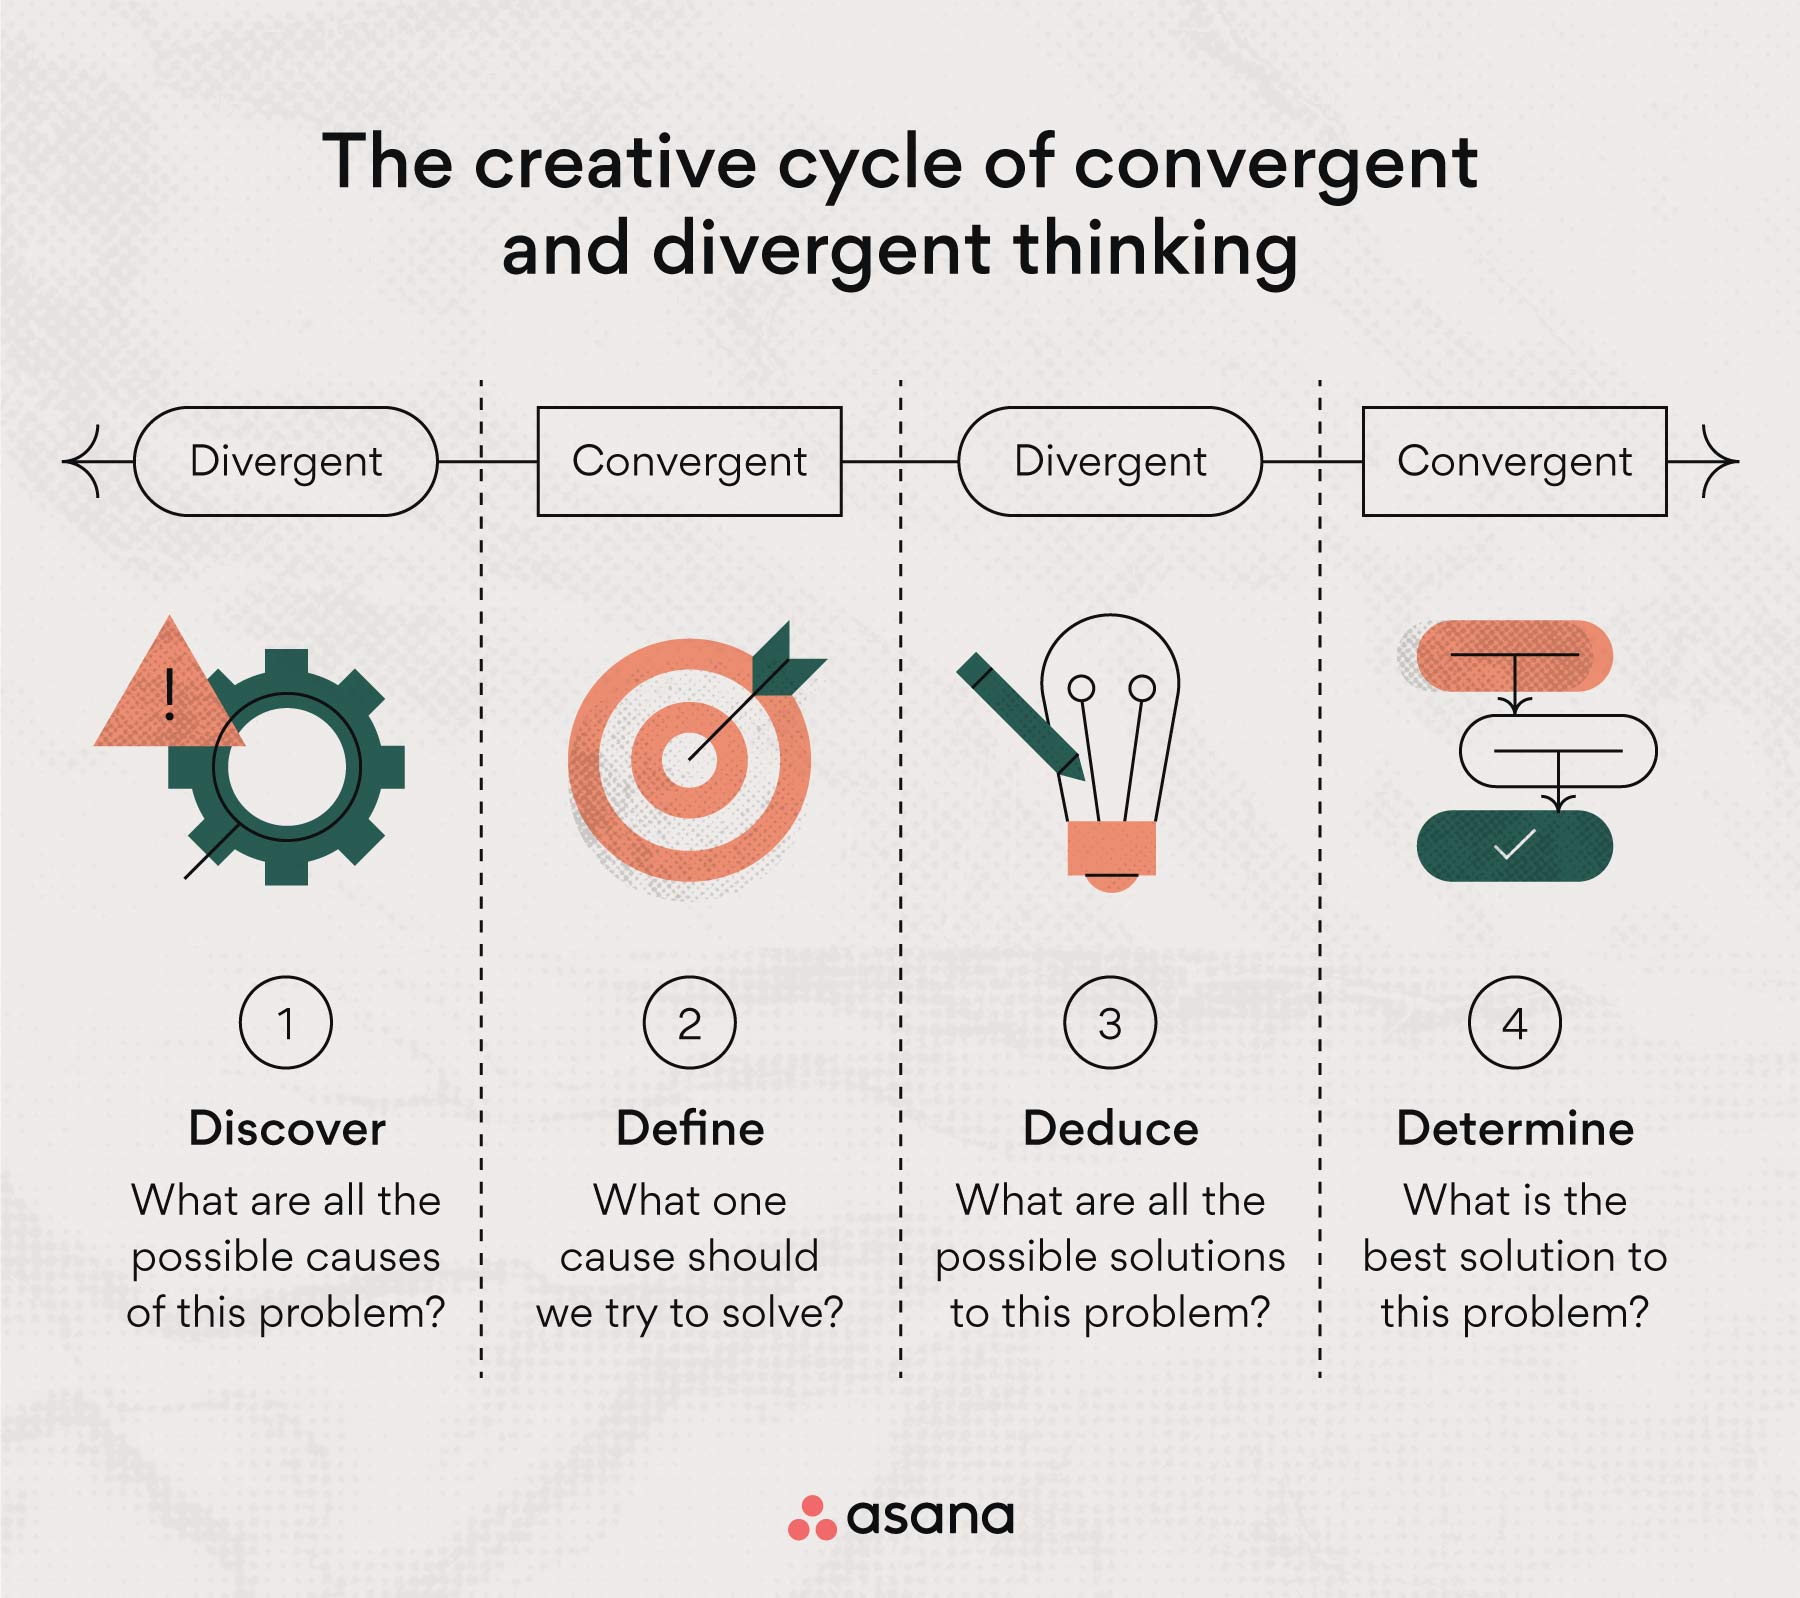 Einsatz von konvergentem vs. divergentem Denken